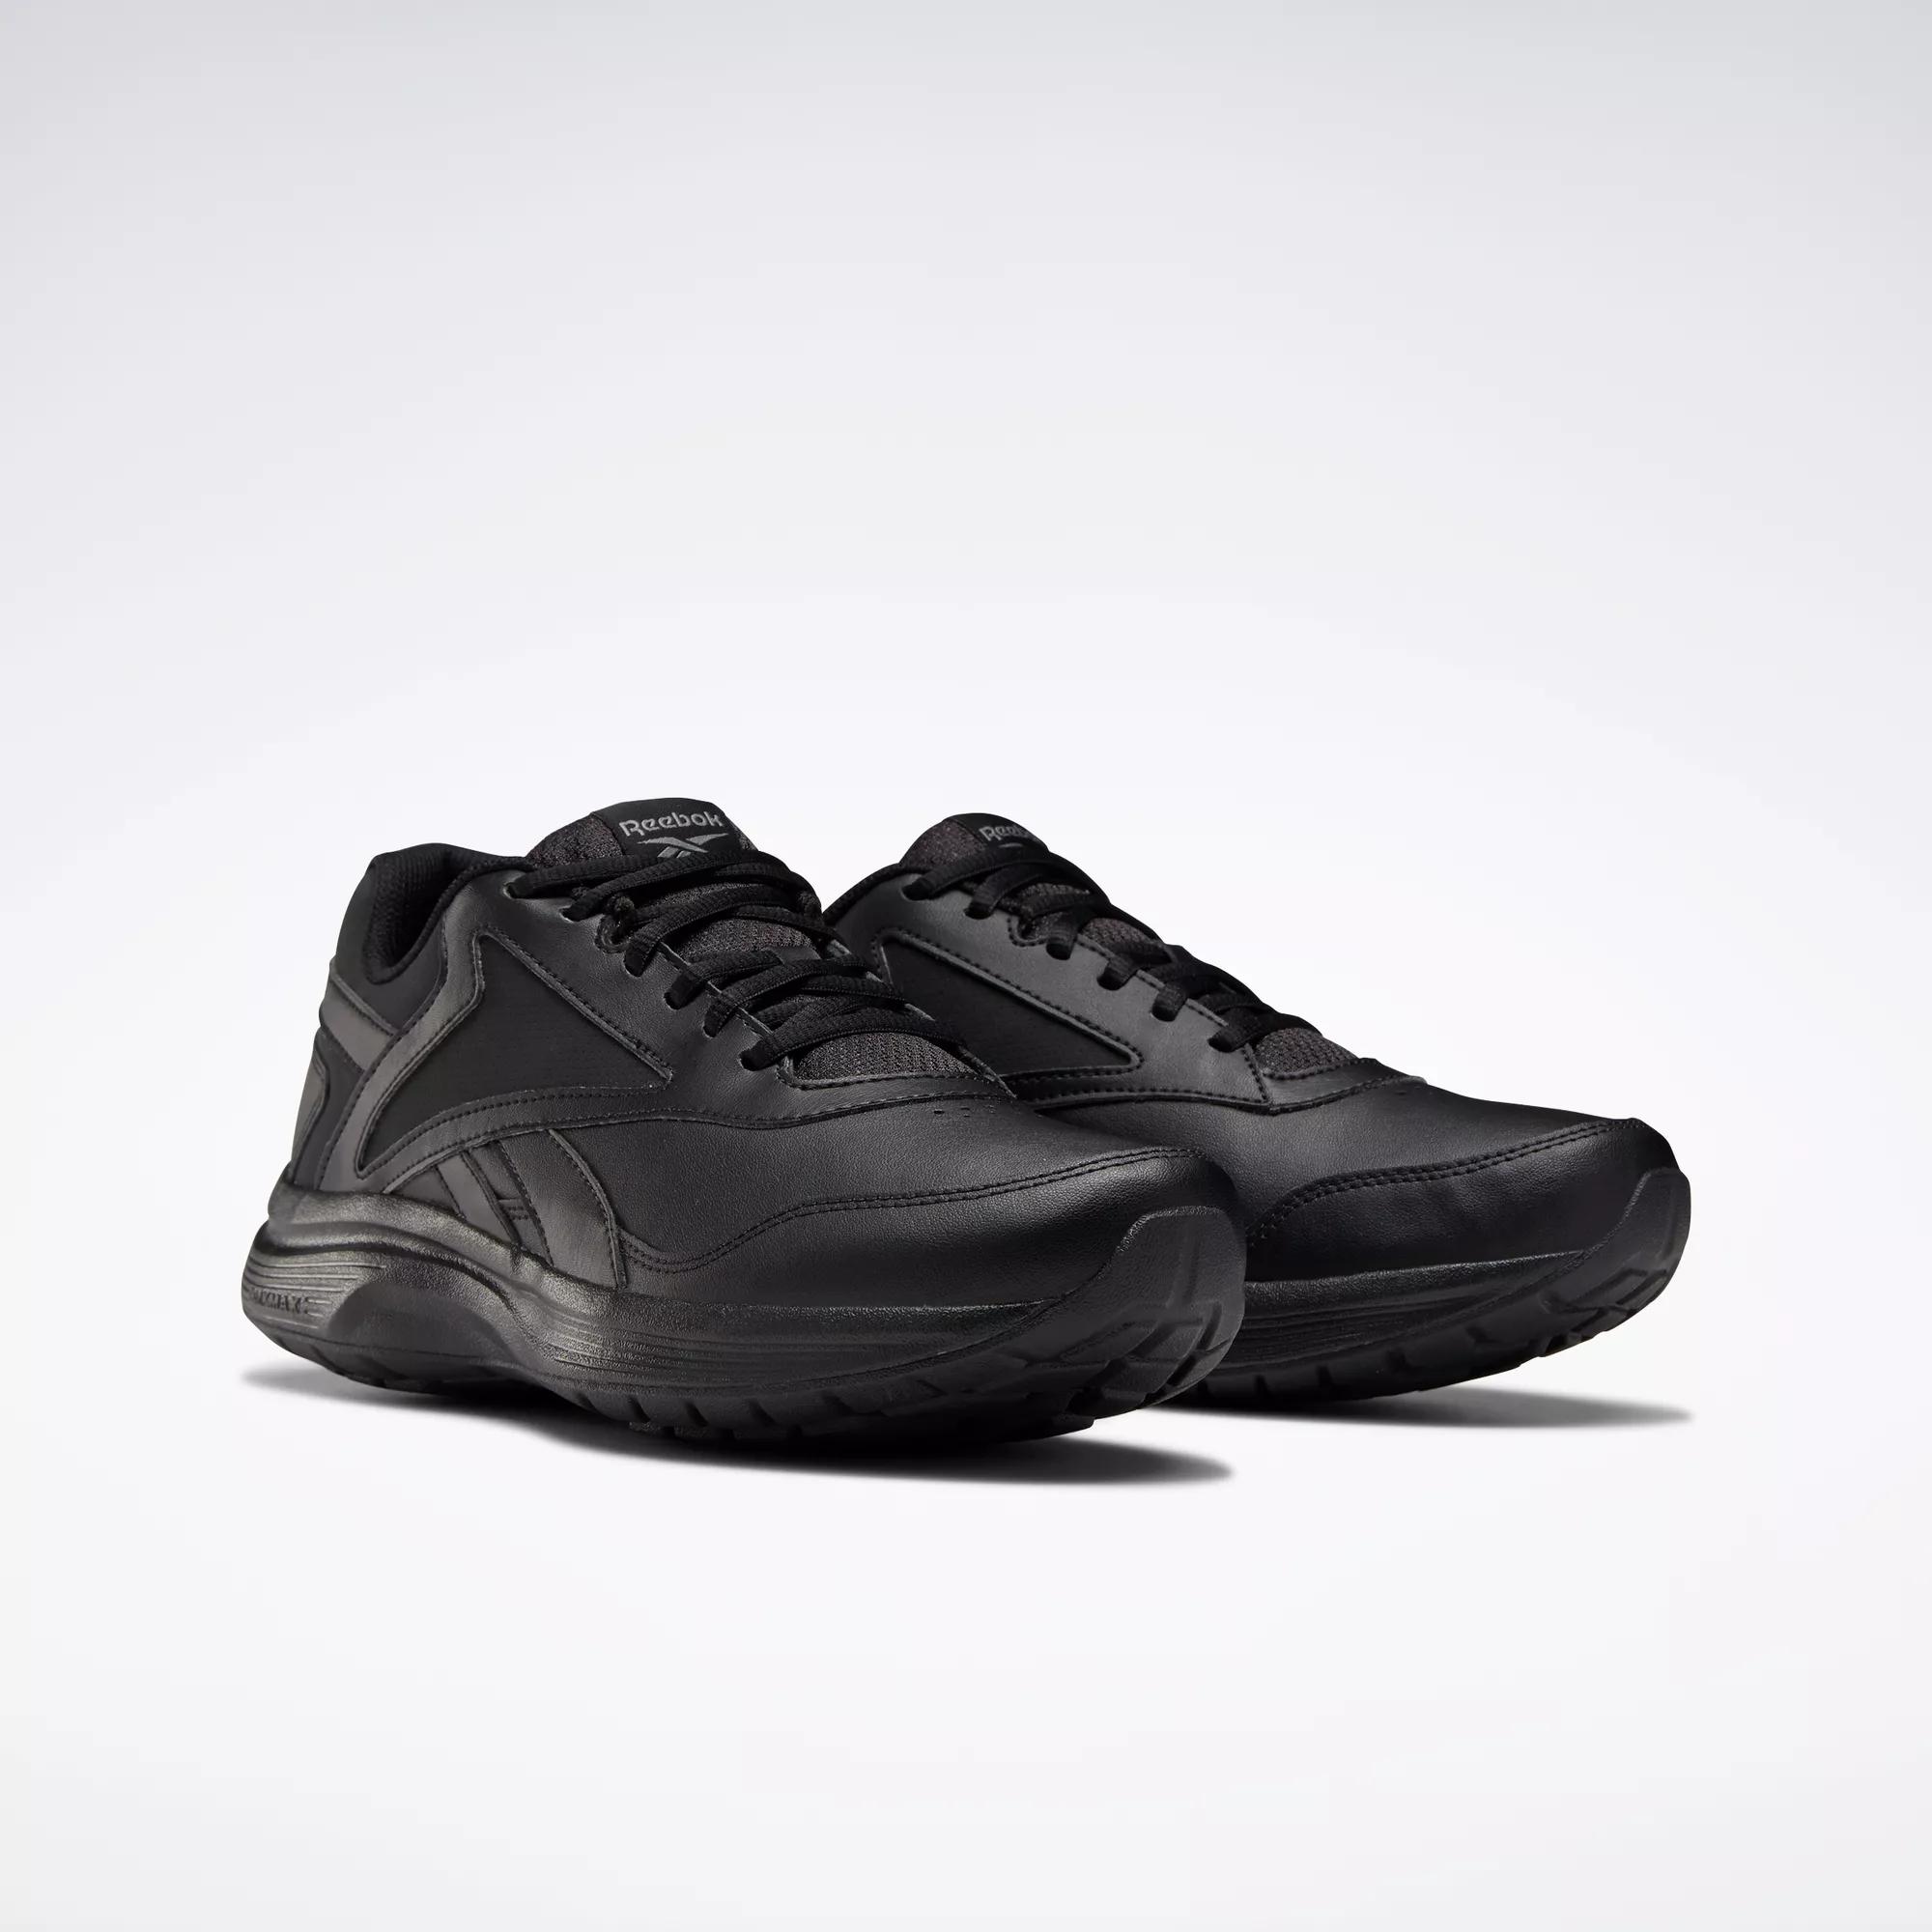 Email schrijven bagage lekken Walk Ultra 7 DMX MAX Men's Shoes - Black / Cold Grey / Collegiate Royal |  Reebok